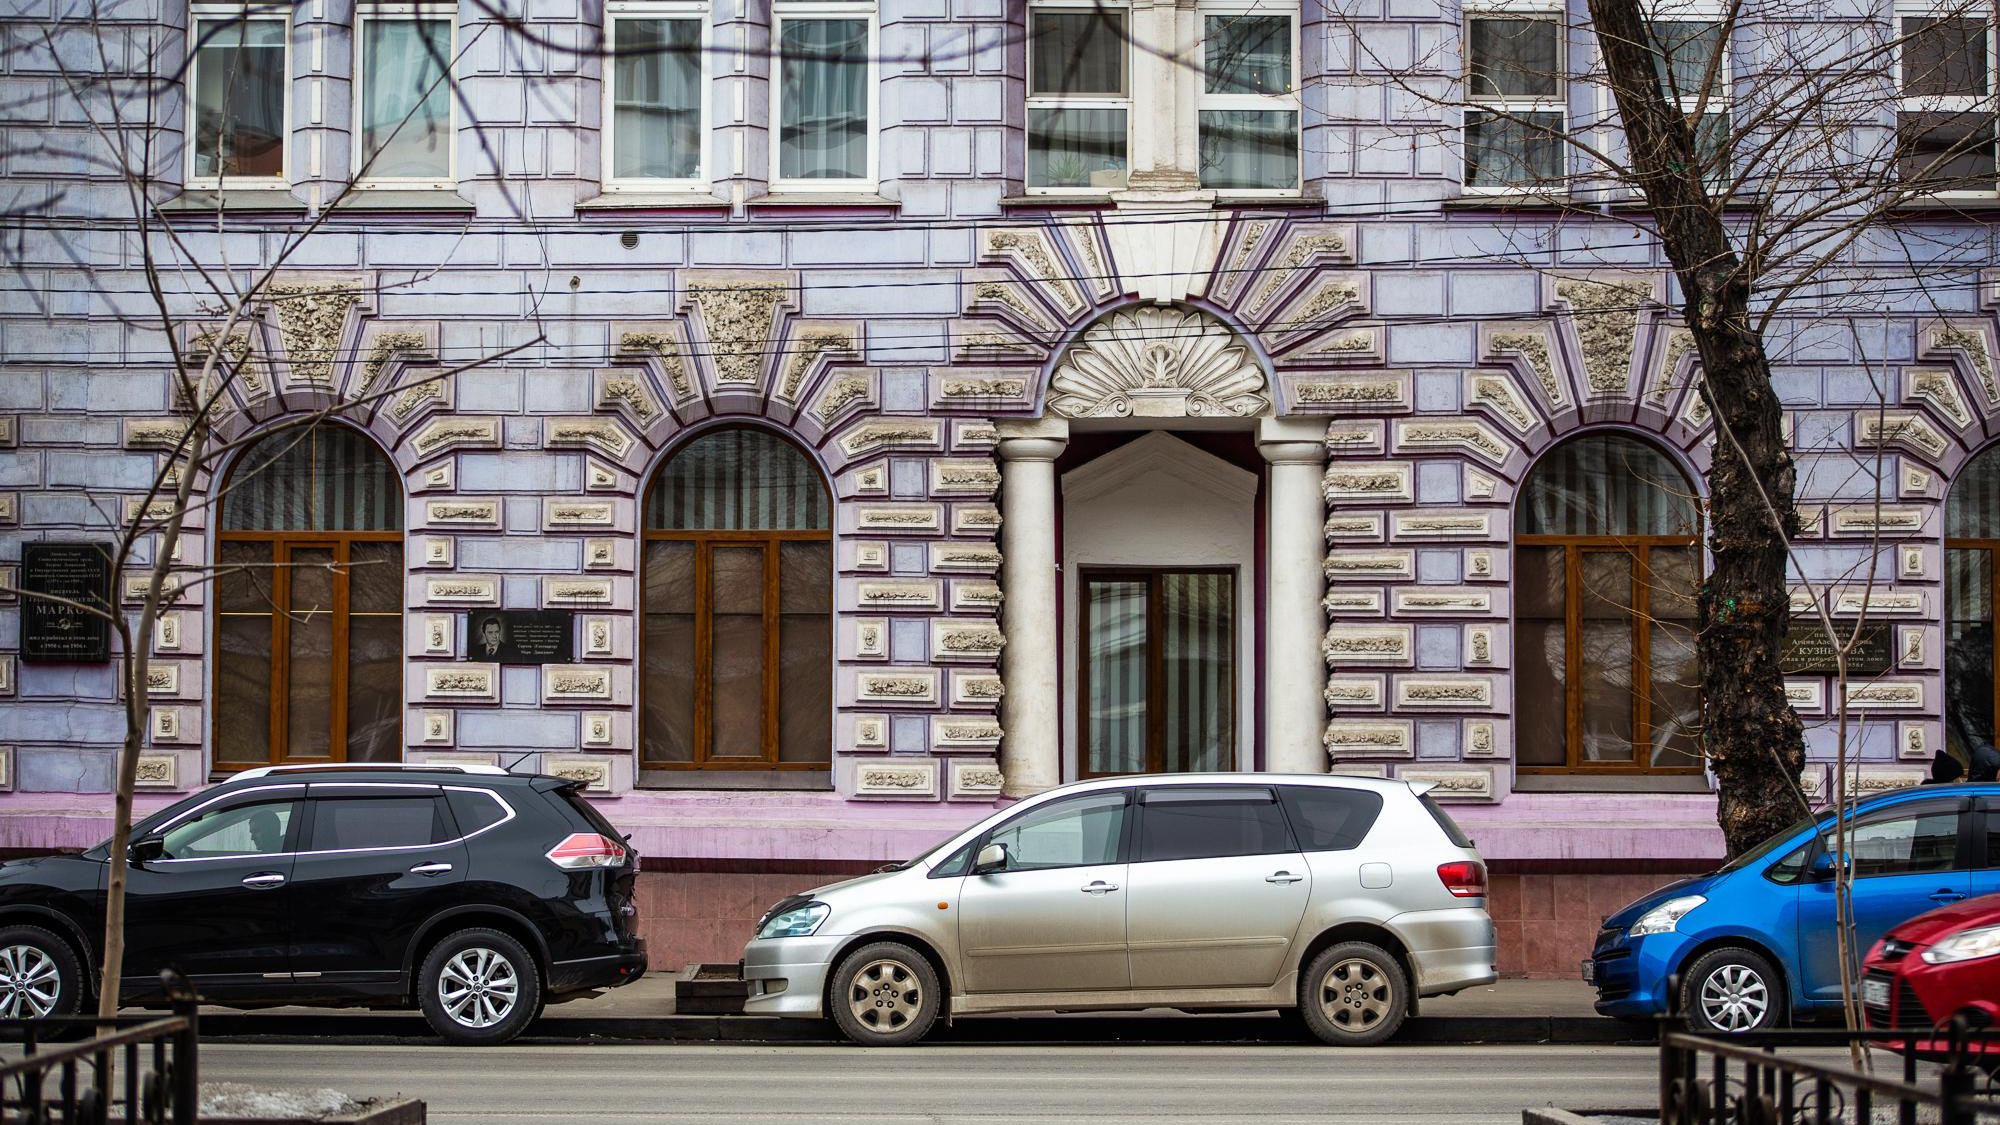 Комплекс фиксации неправильной парковки начал работу в Иркутске. Рассказываем, как он работает